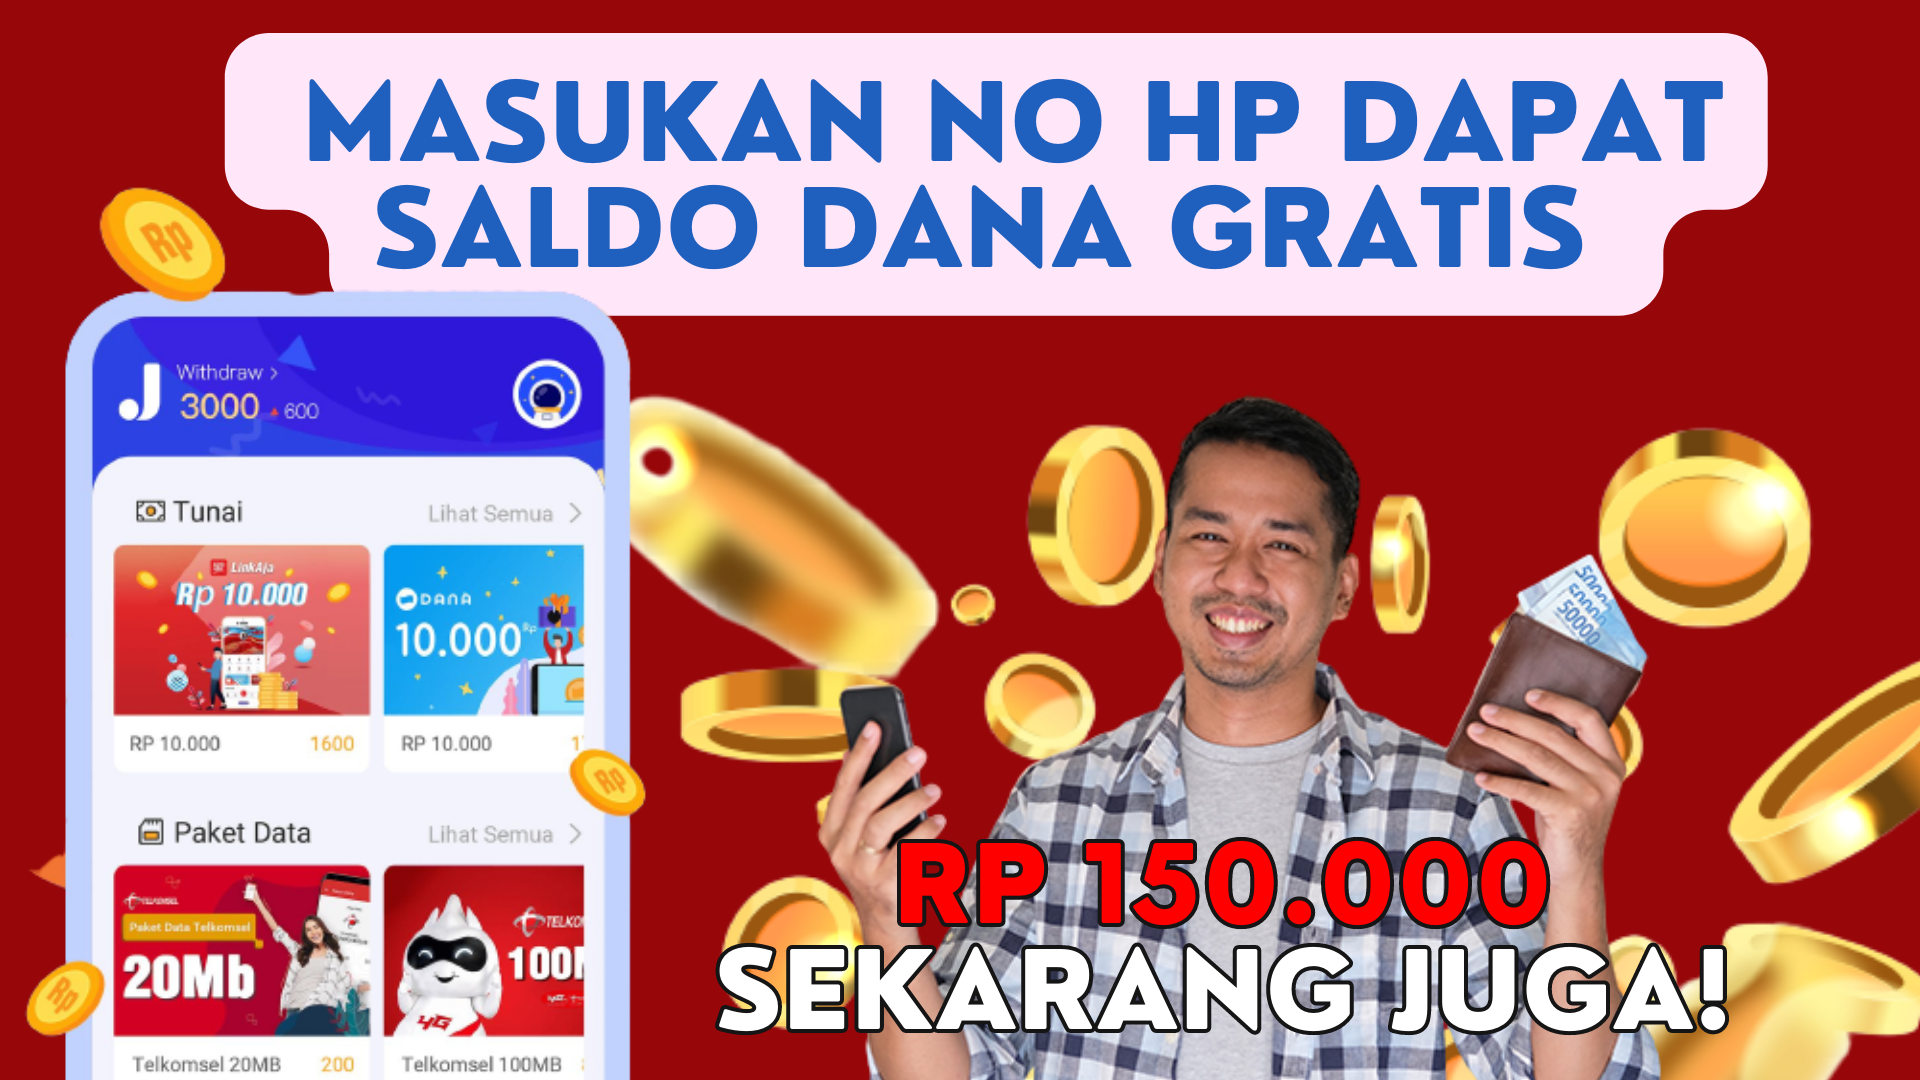 Cukup Masukan No HP Bisa Dapat Saldo DANA Gratis Rp150.000 Sekarang Juga!